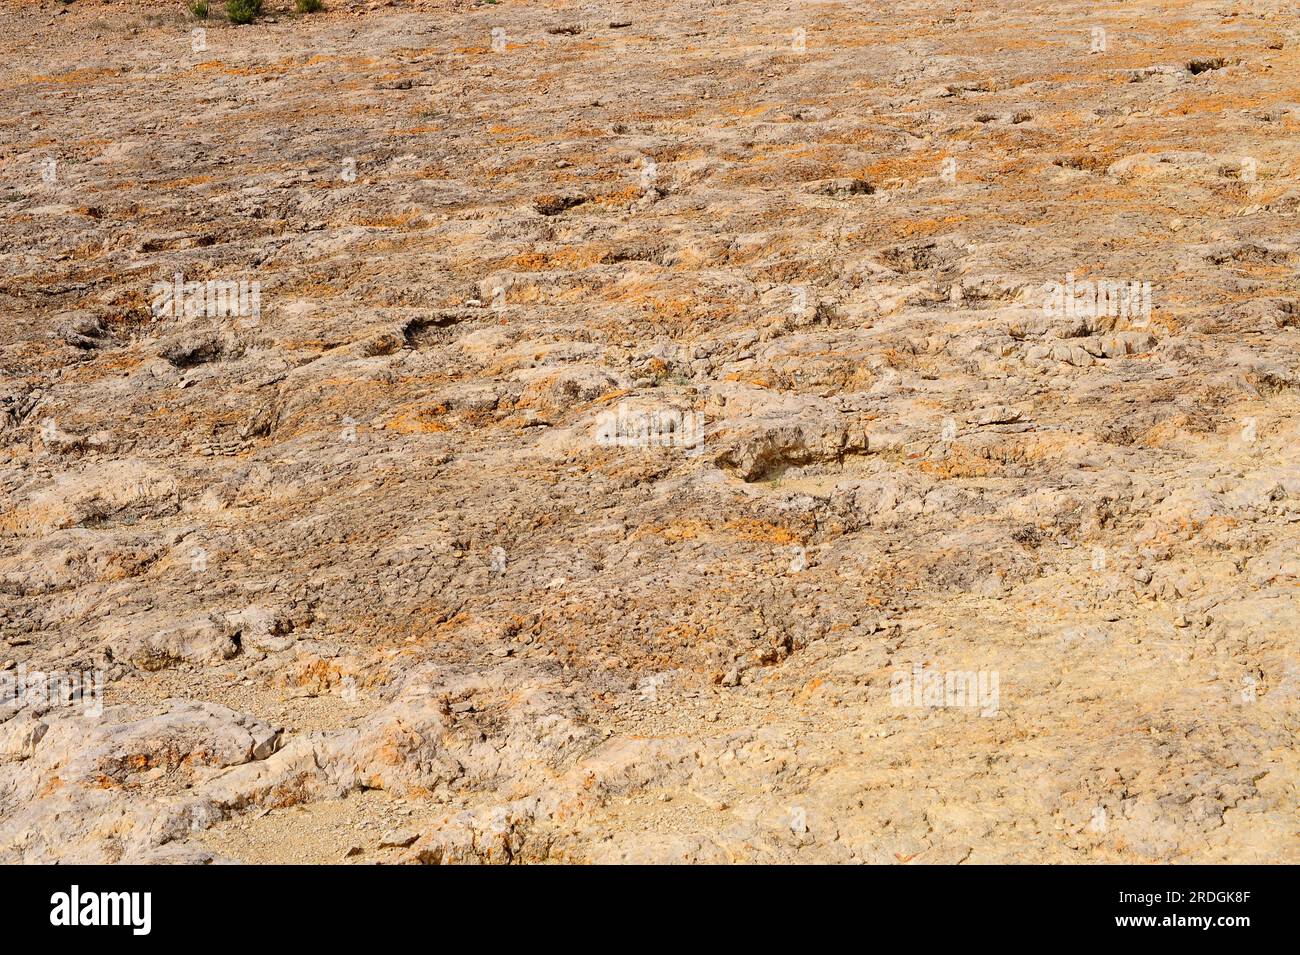 Ichnofossils o tracce fossili di sauropodi impronte di dinosauri. Questa foto è stata scattata a la Maestra, Camarasa, Lleida, Catalogna, Spagna. Foto Stock